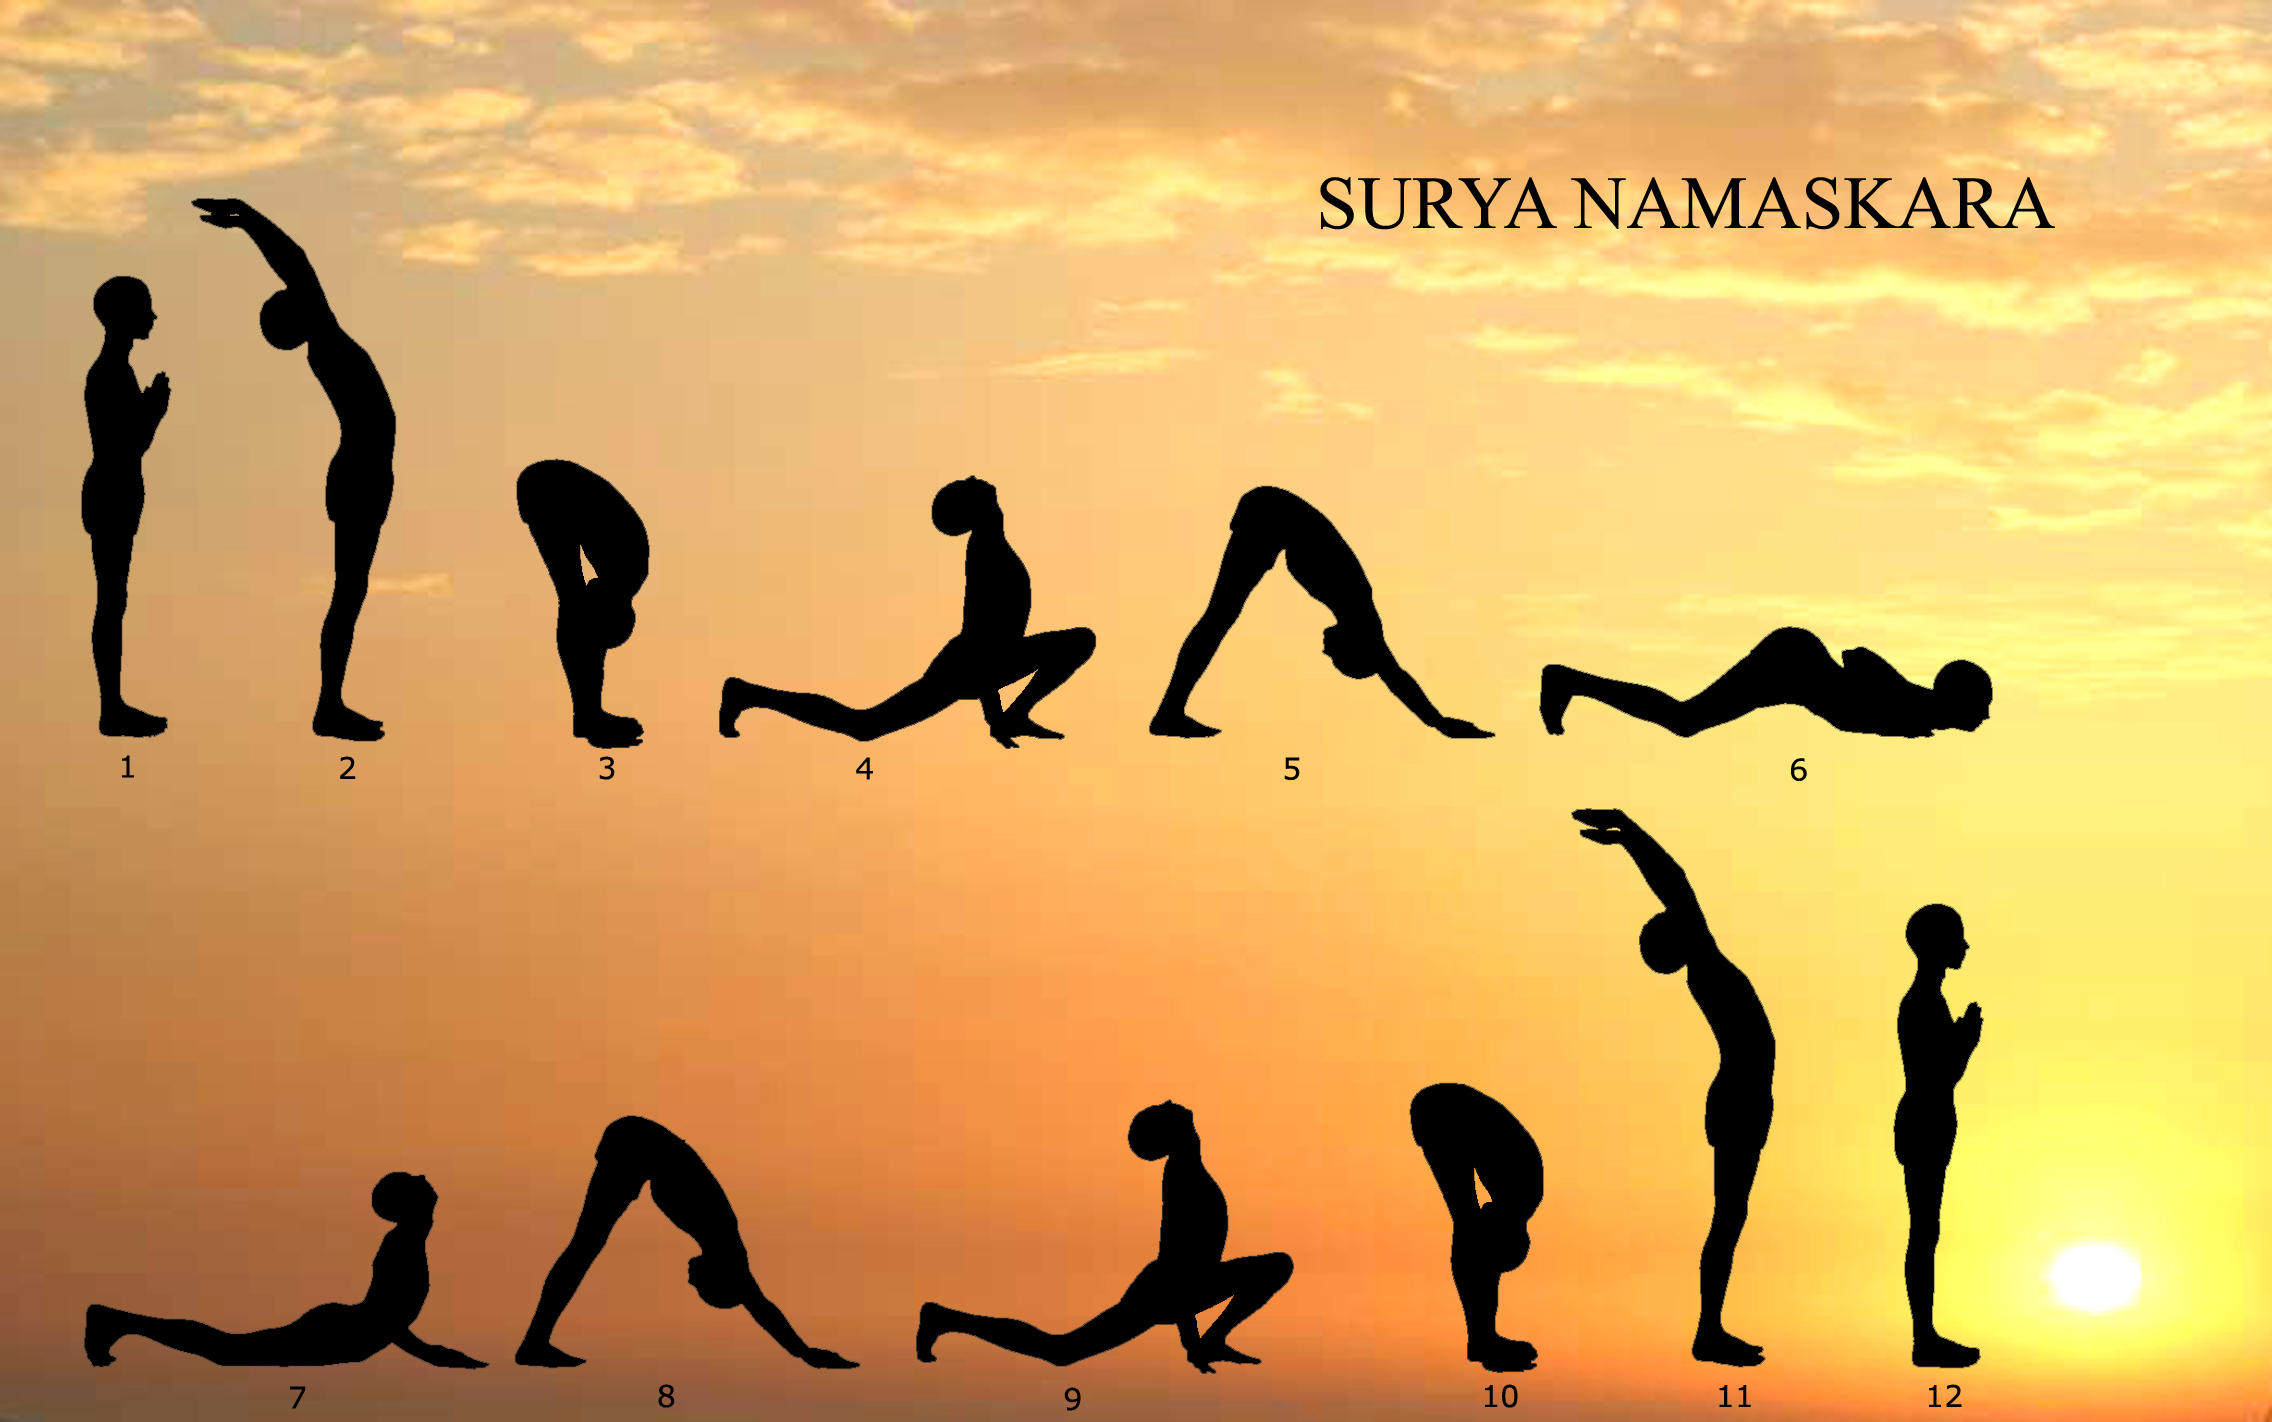 Surya Namaskar - The Art of Sun Salutation - Indoindians.com